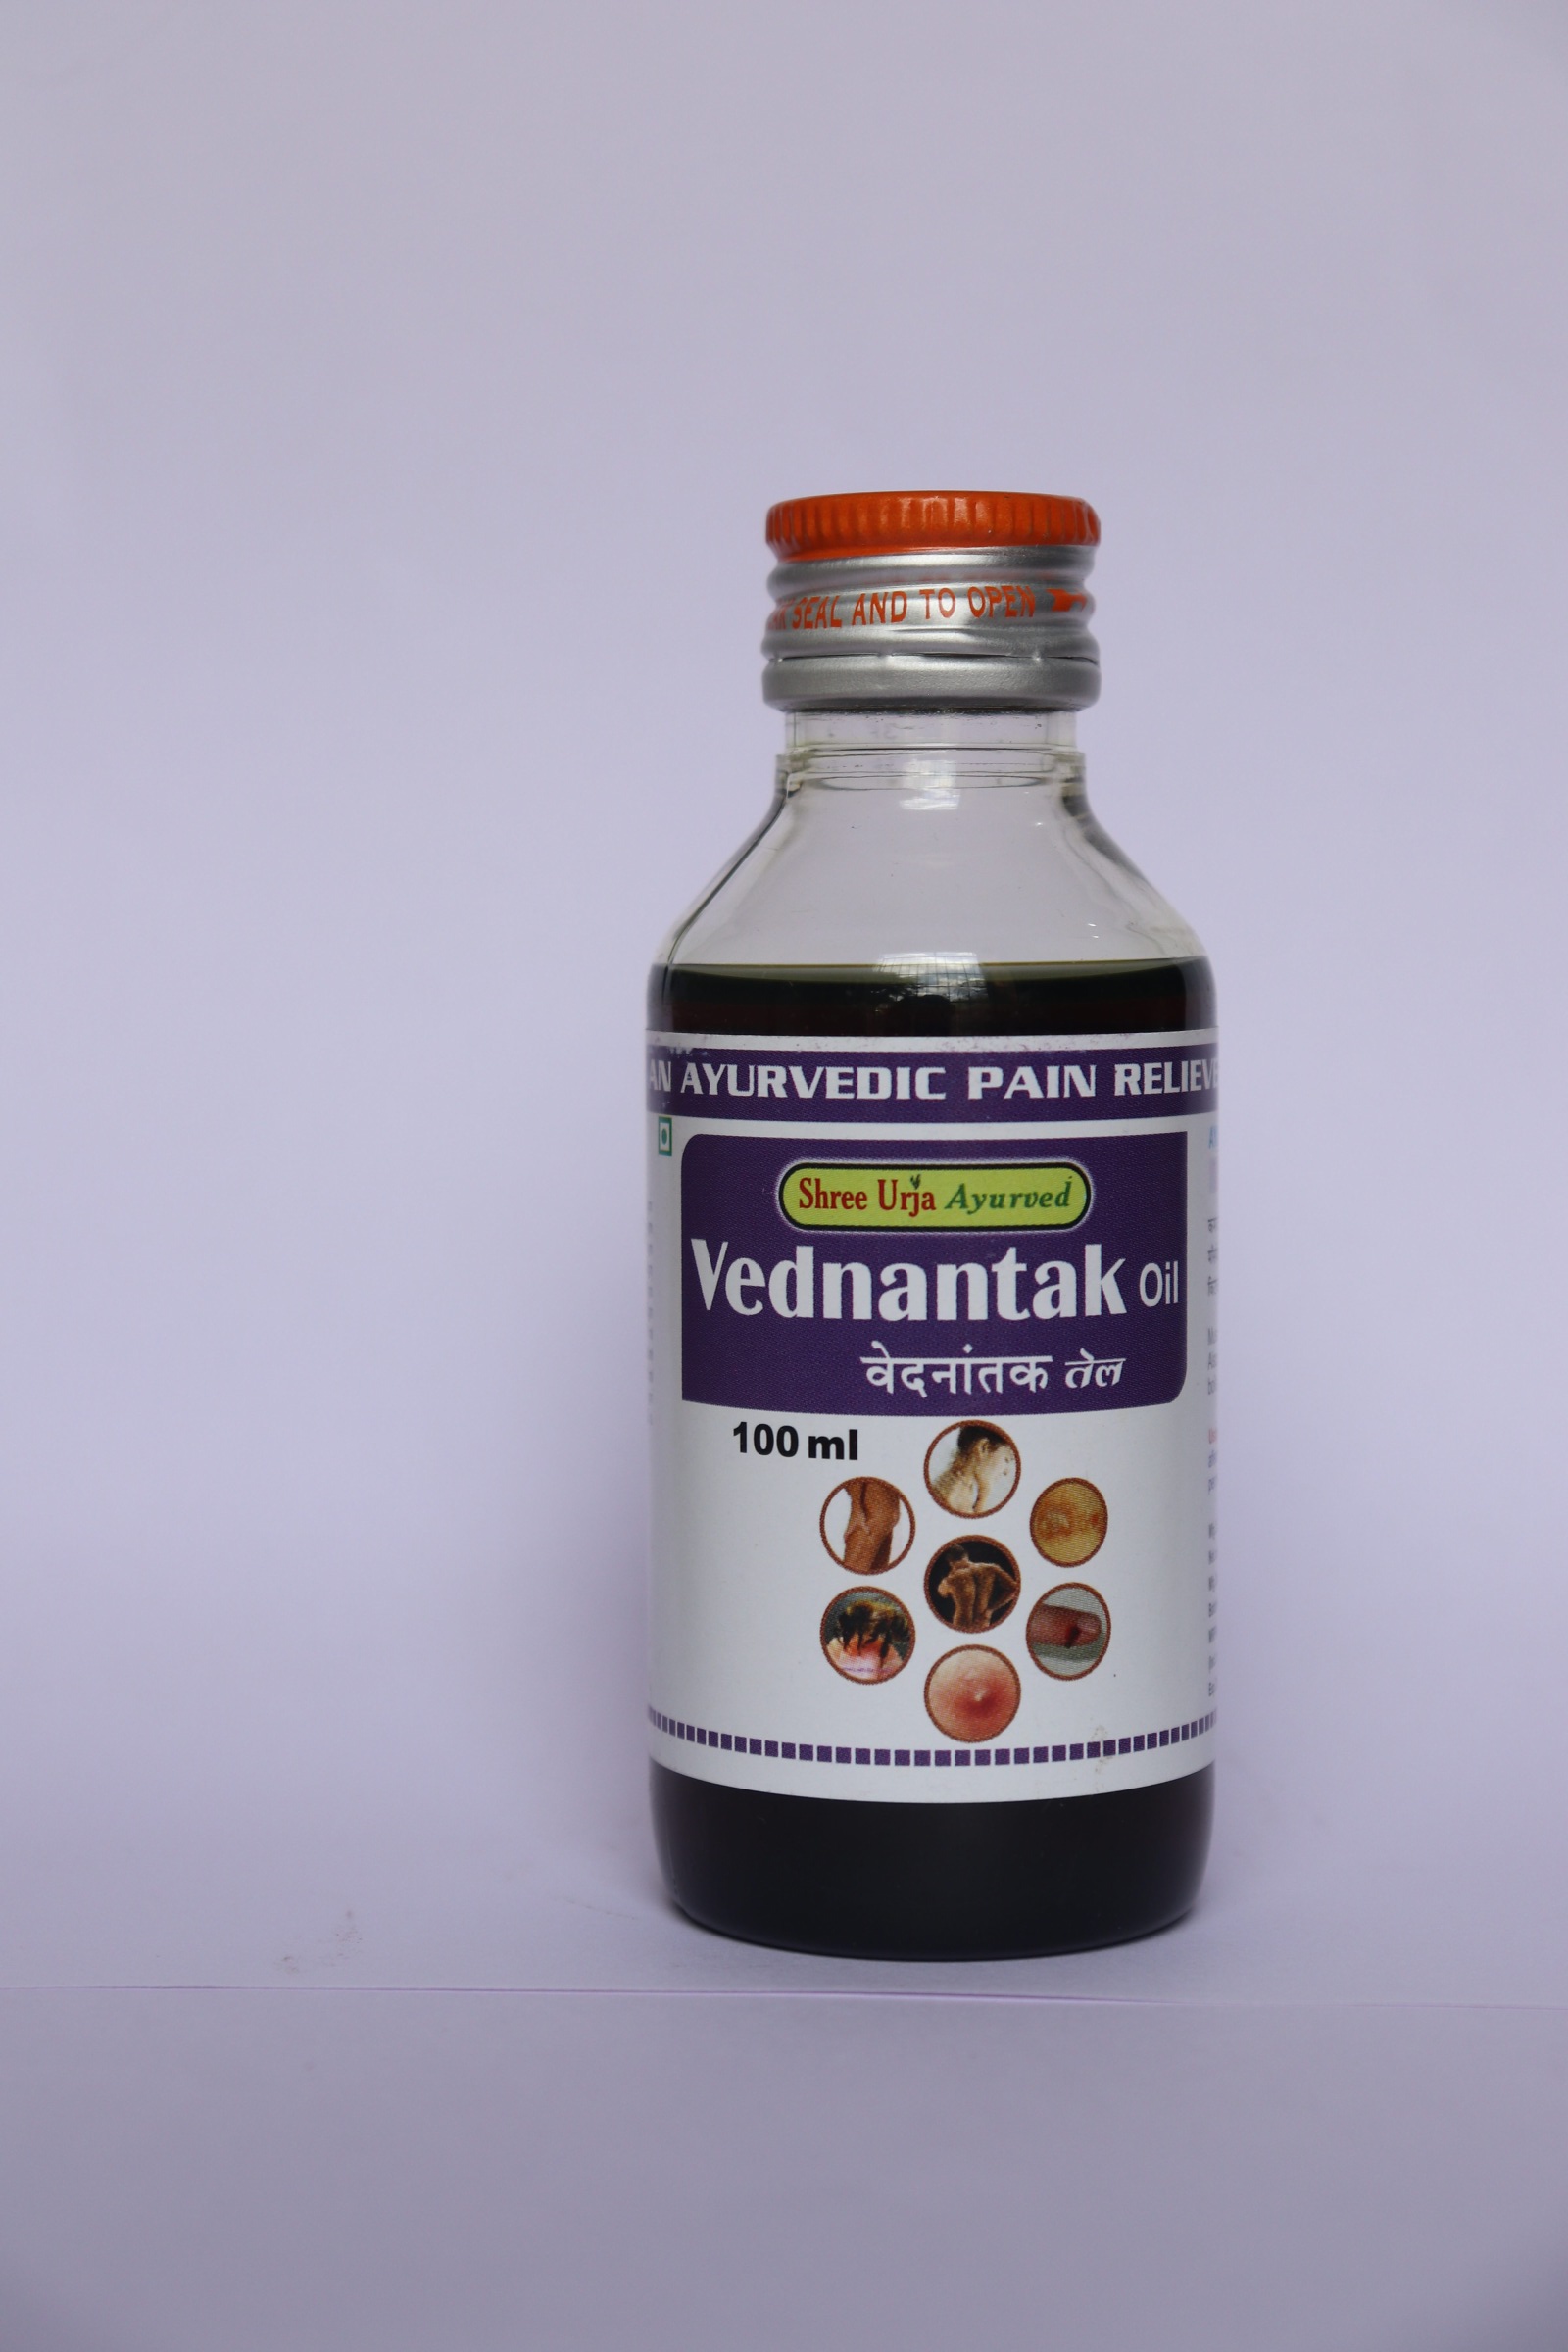 Buy Vednantak Oil (Vaat Urja Oil) at Best Price Online